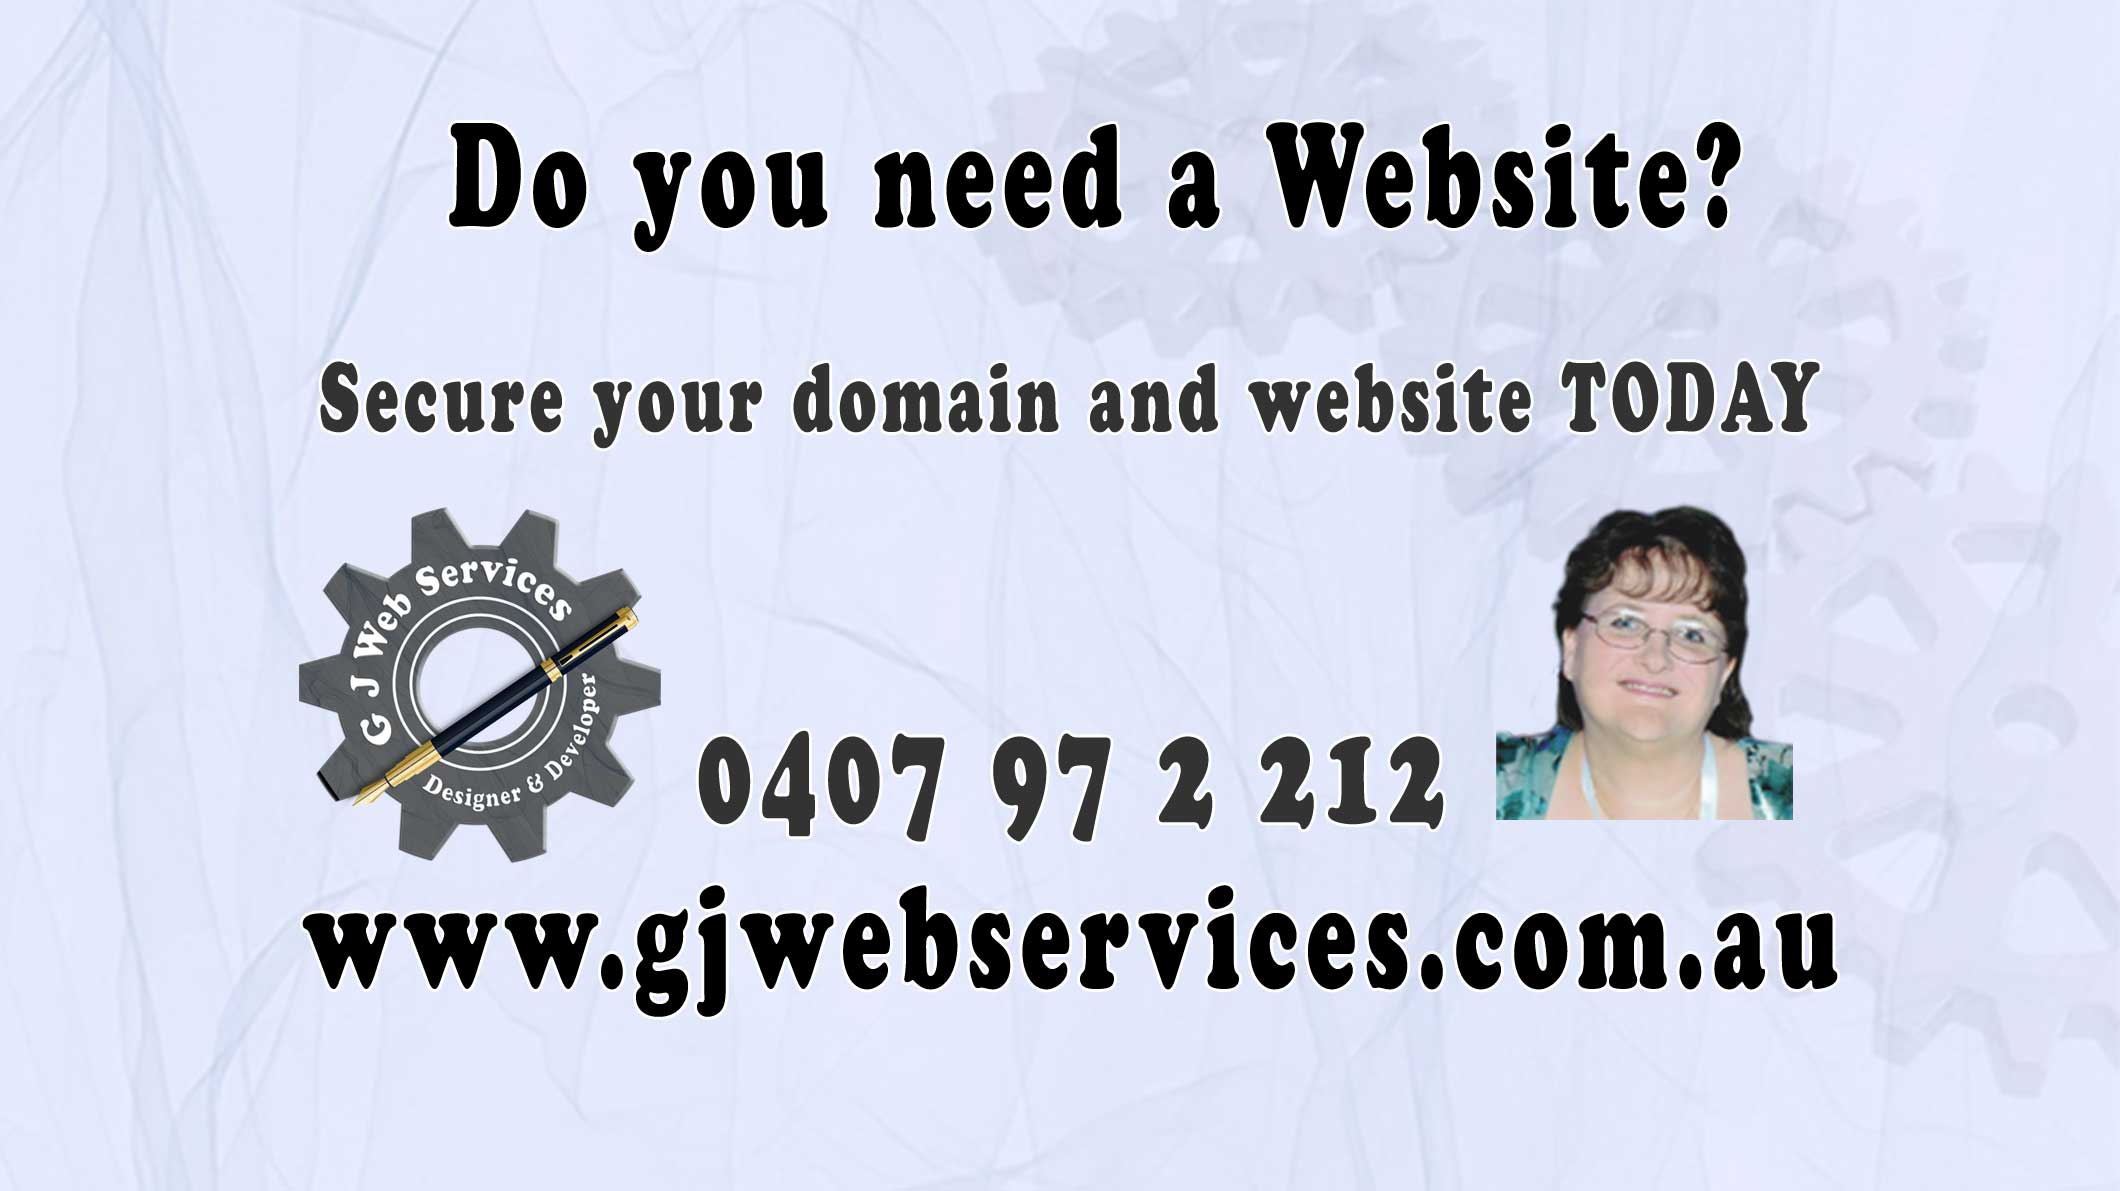 Do you need a Website?